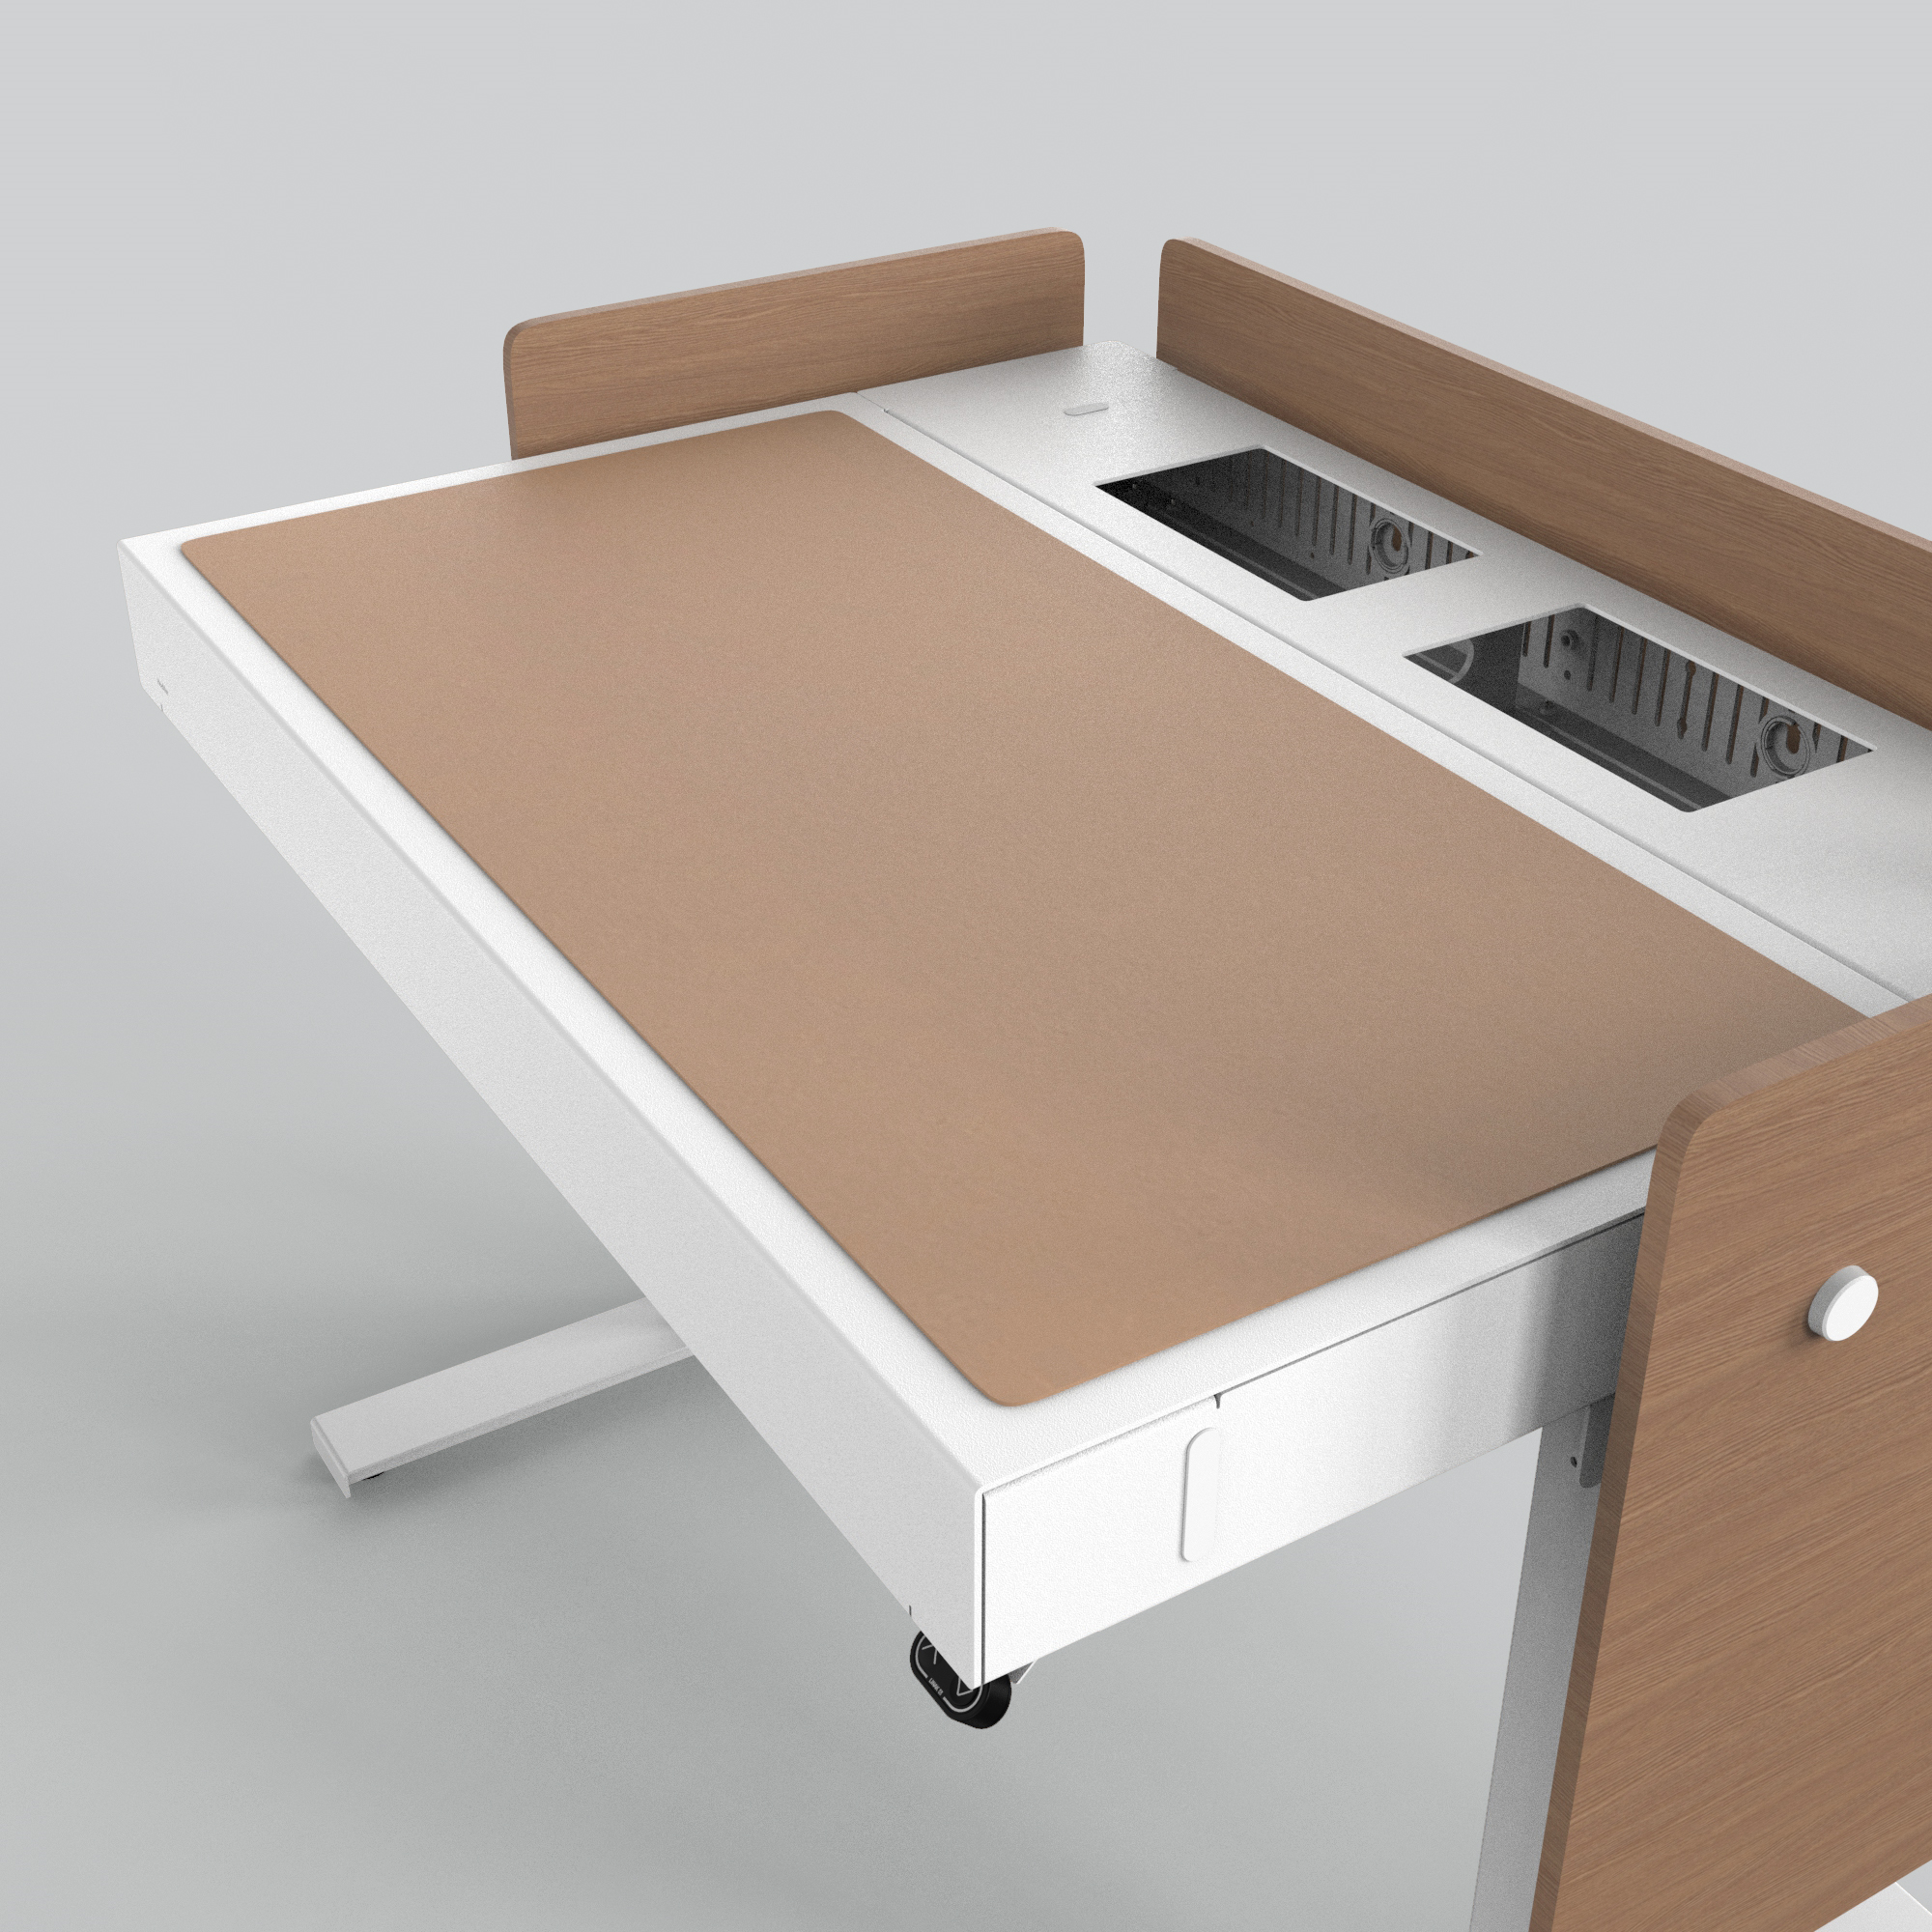 H922-4003 4U Deskpad - Walnut